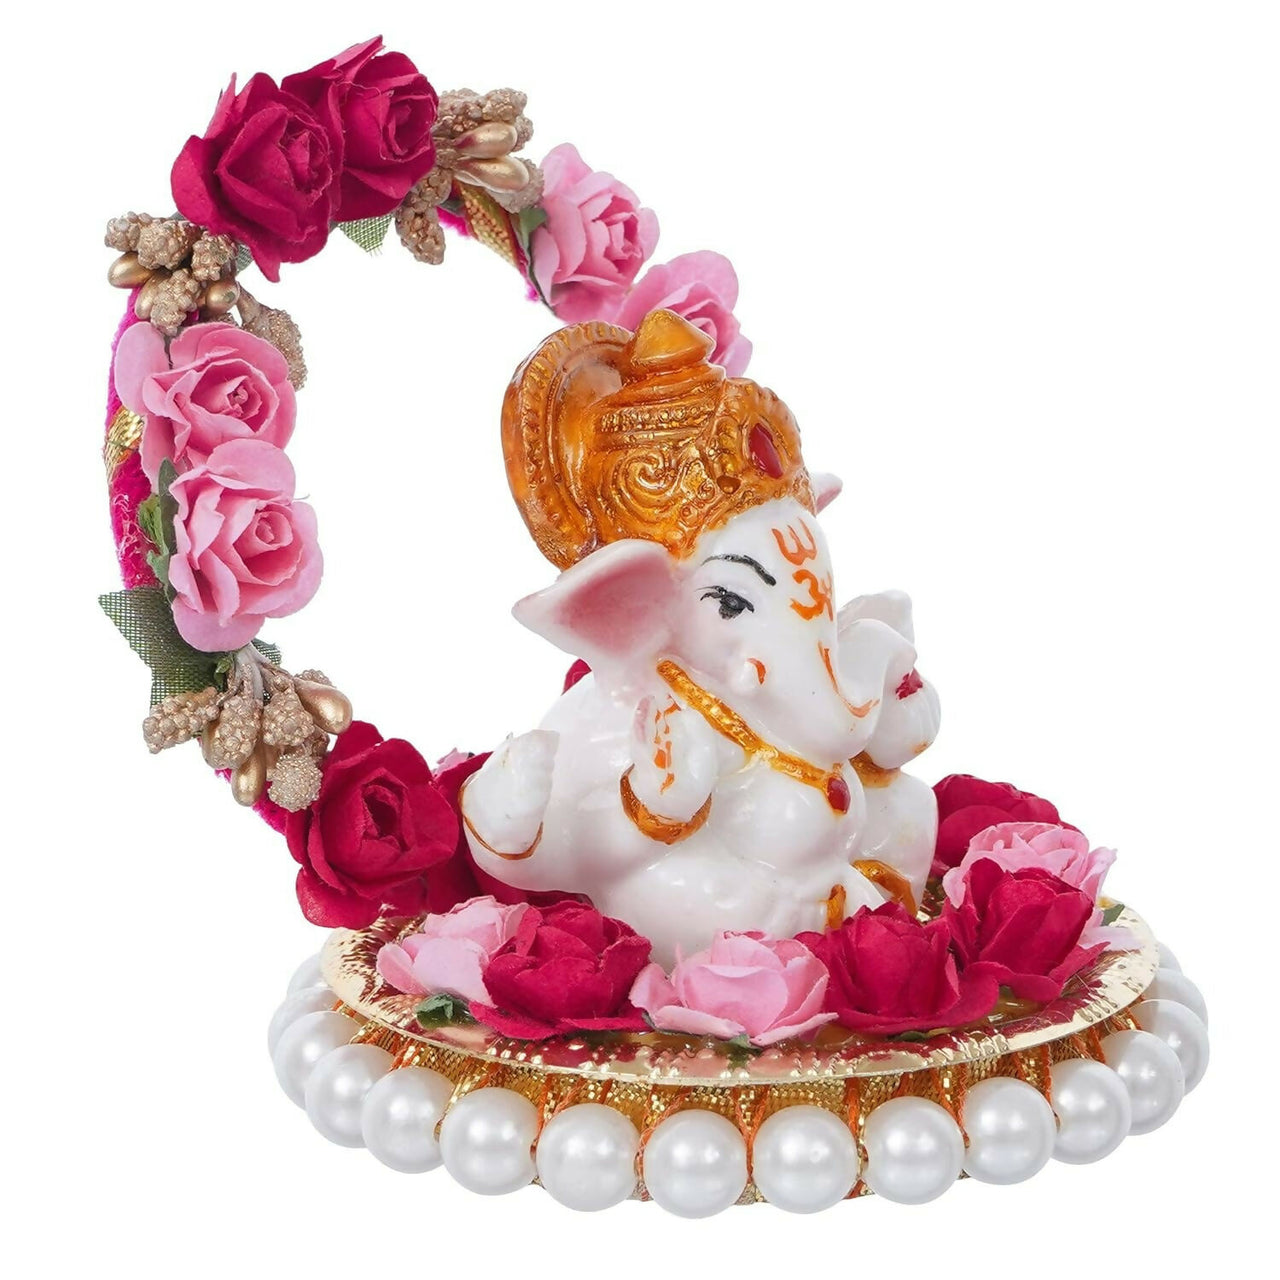 eCraftIndia Lord Ganesha Idol - Distacart